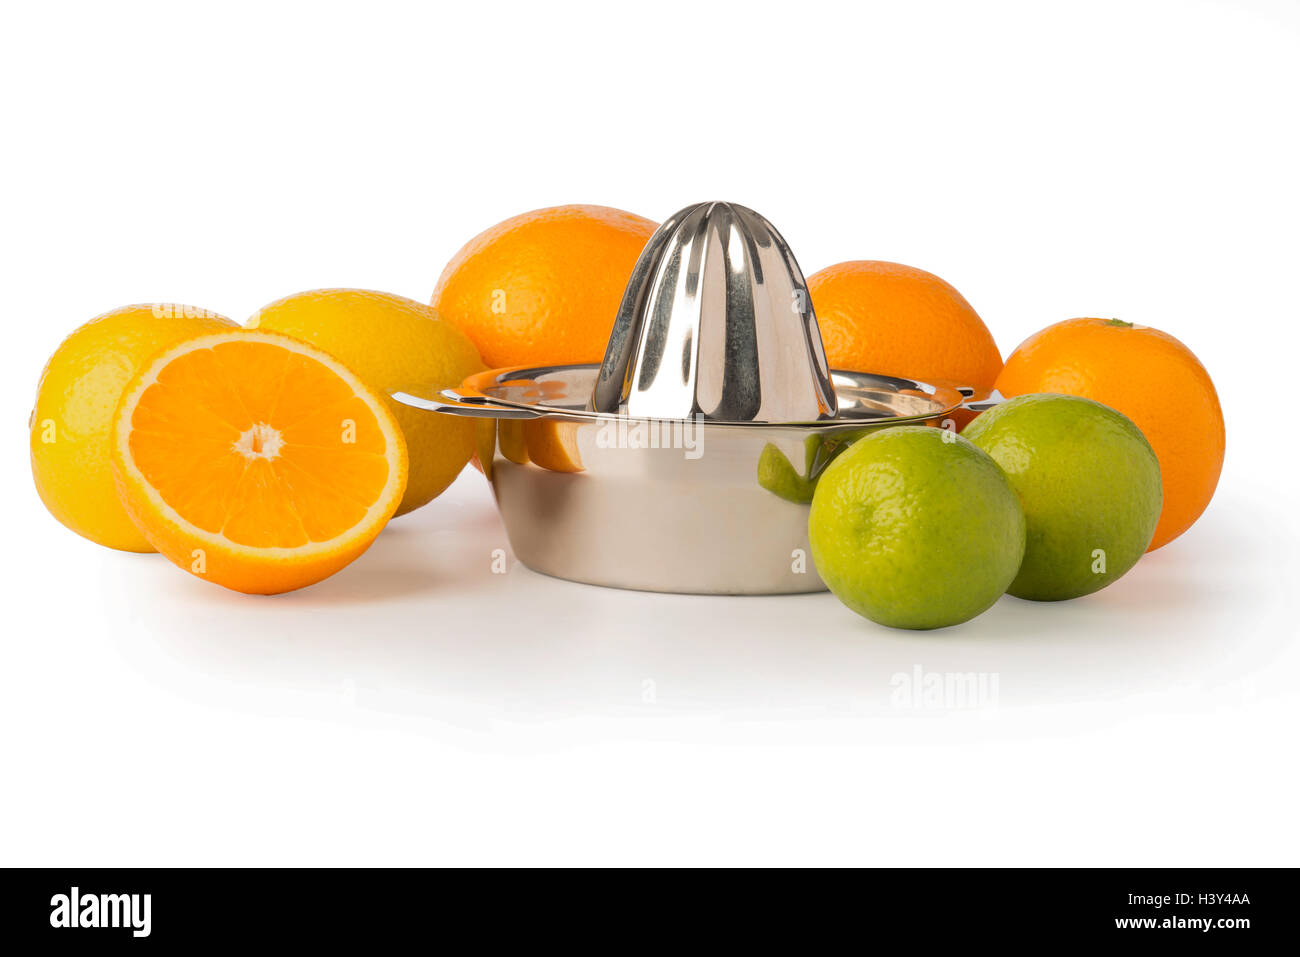 D'une découpe de l'acier inoxydable ou d'orange citrus juicer part entouré d'ensemble de citrons, oranges, citron vert, et une demi-orange. Banque D'Images